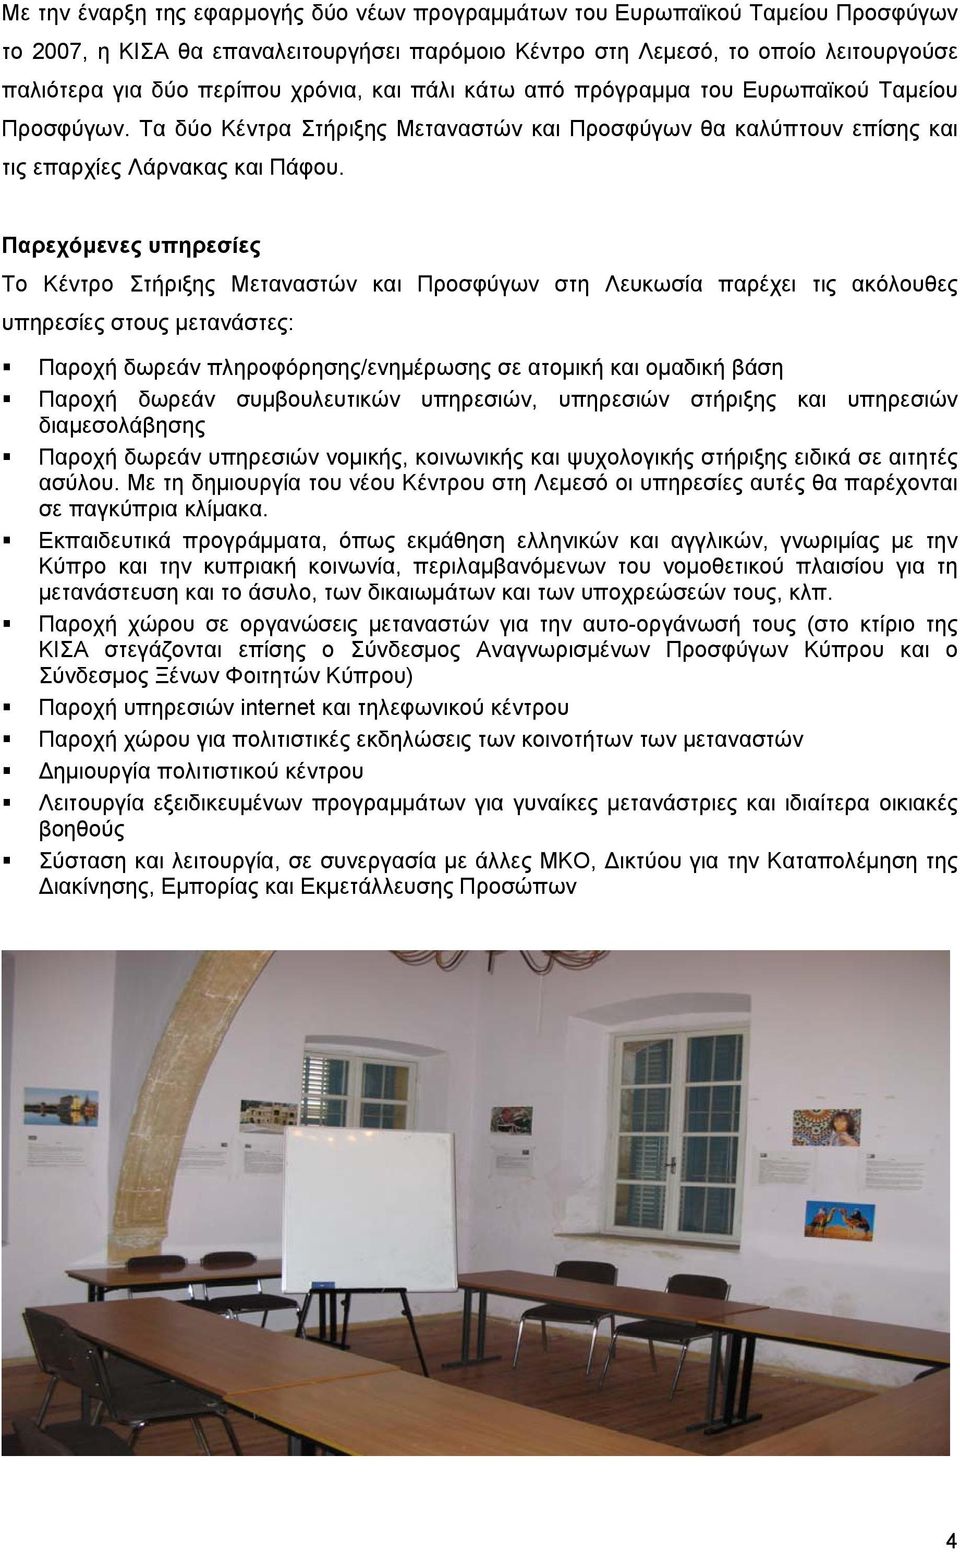 Παρεχόµενες υπηρεσίες Το Κέντρο Στήριξης Μεταναστών και Προσφύγων στη Λευκωσία παρέχει τις ακόλουθες υπηρεσίες στους µετανάστες: Παροχή δωρεάν πληροφόρησης/ενηµέρωσης σε ατοµική και οµαδική βάση